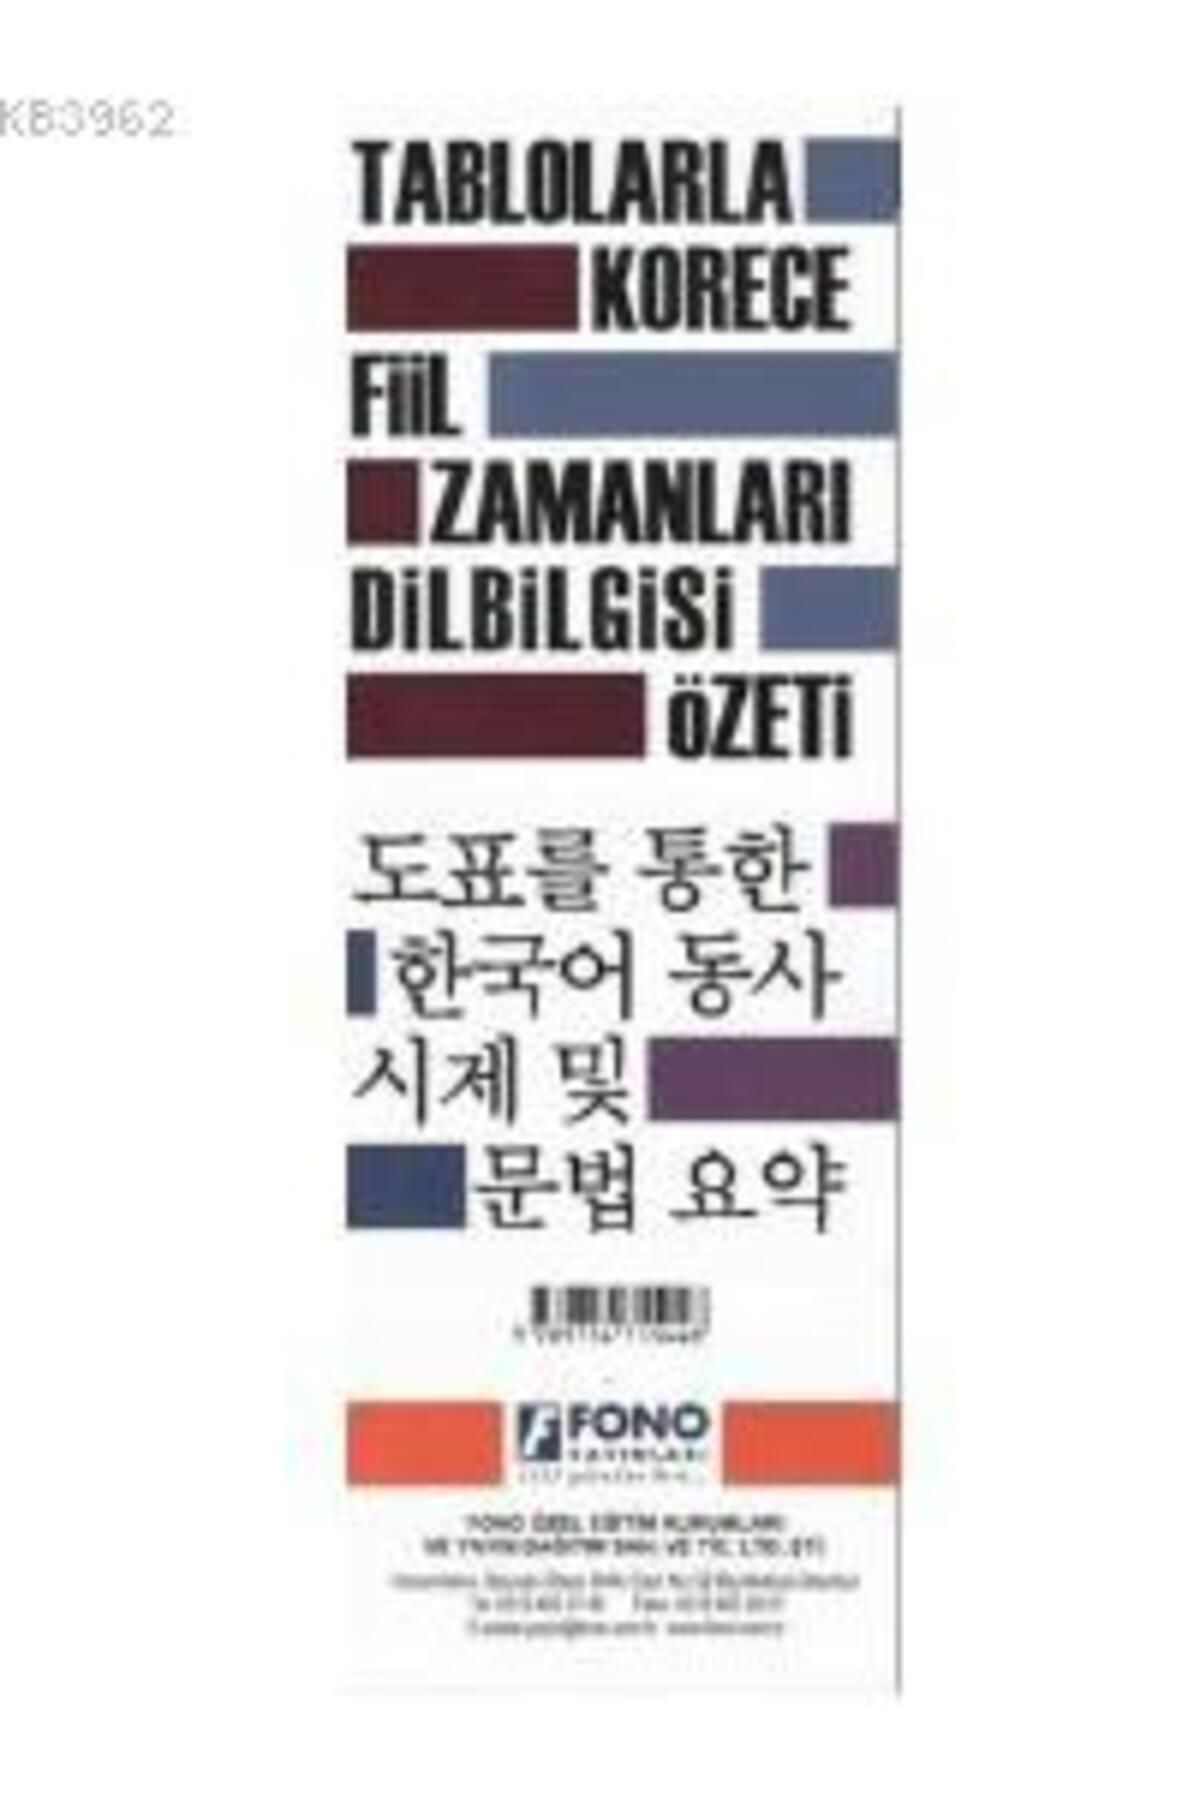 Fono Yayınları Tablolarla Korece Fiil Zamanları Dilbilgisi Özeti